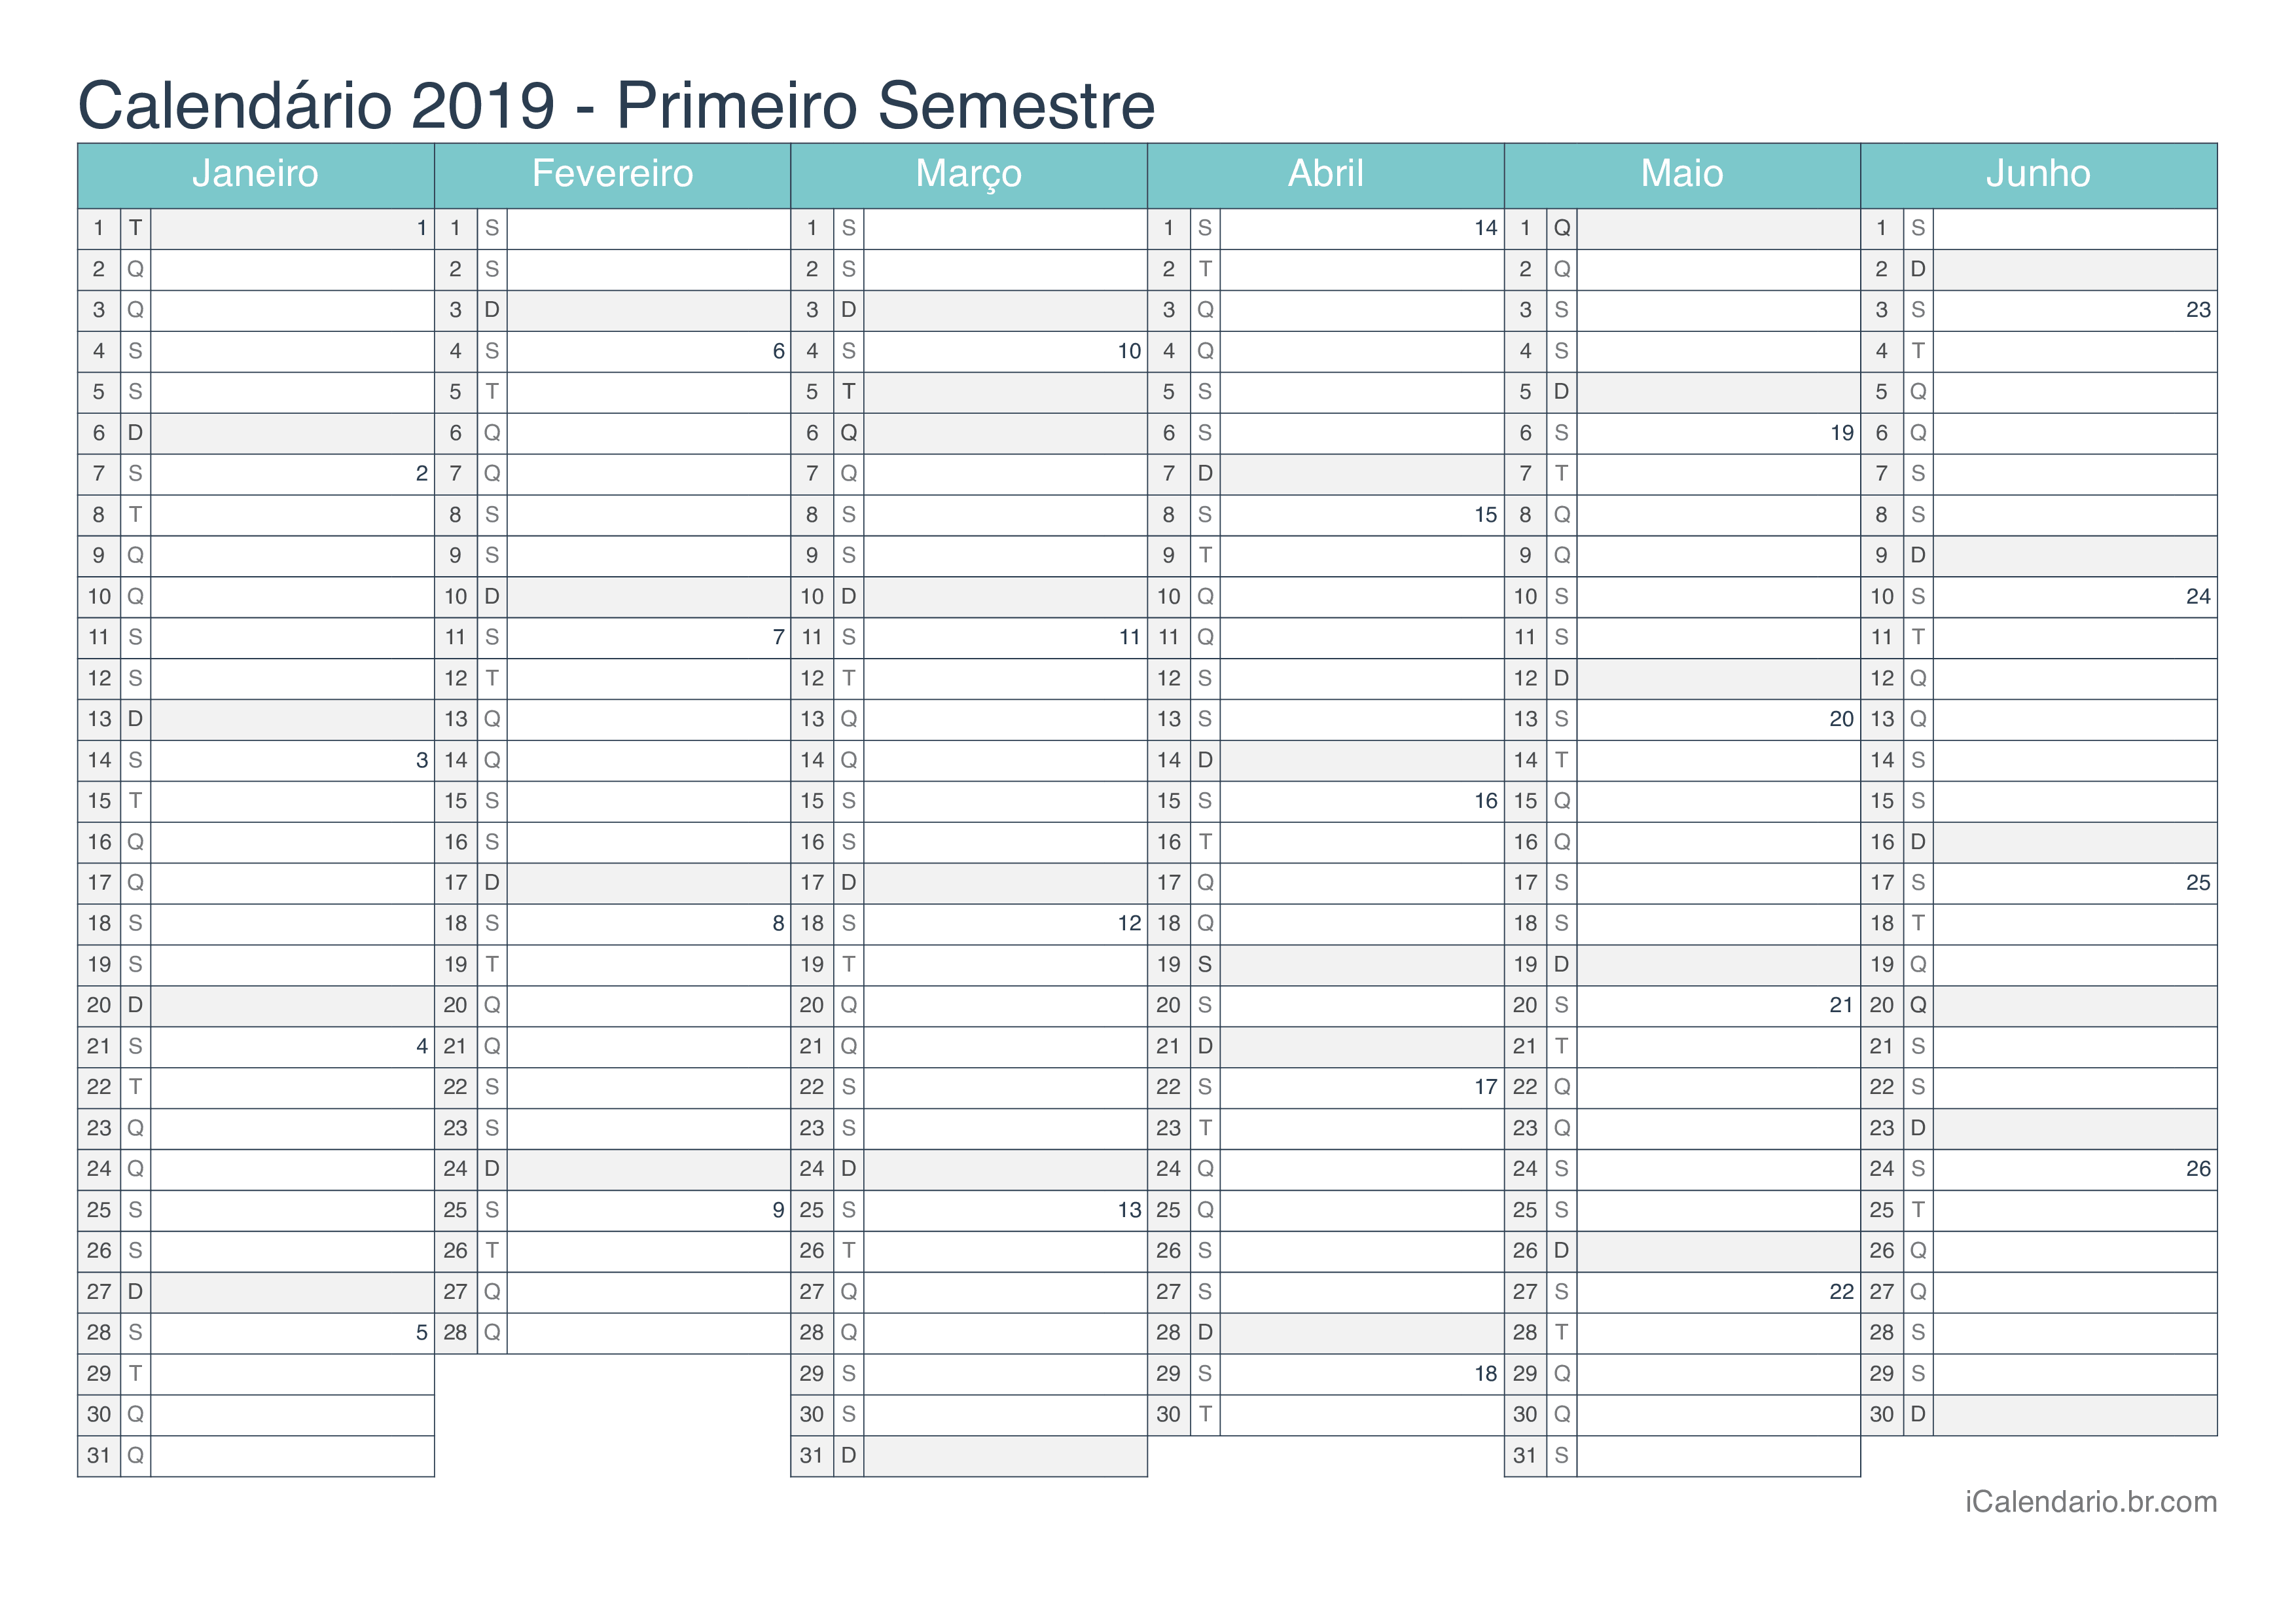 Calendário por semestre com números da semana 2019 - Turquesa